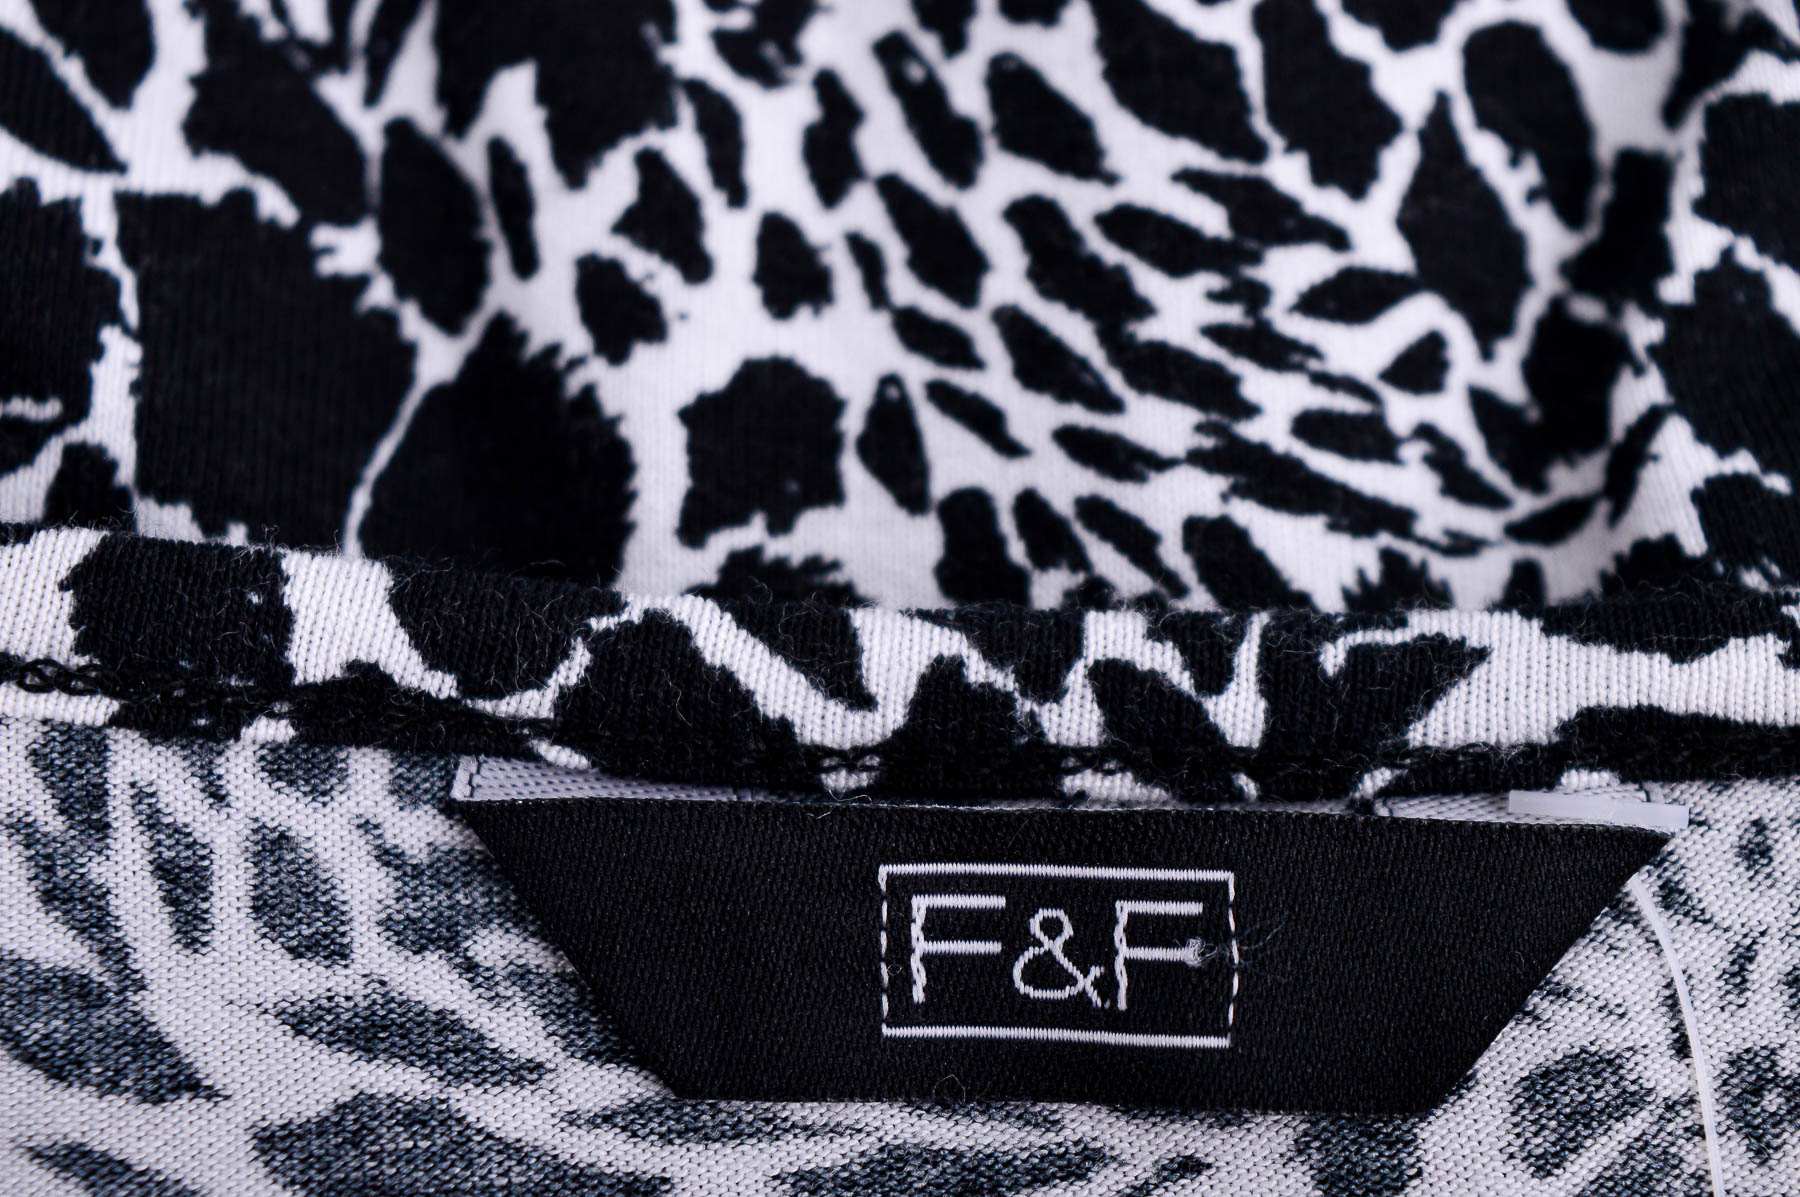 Bluza de damă - F&F - 2